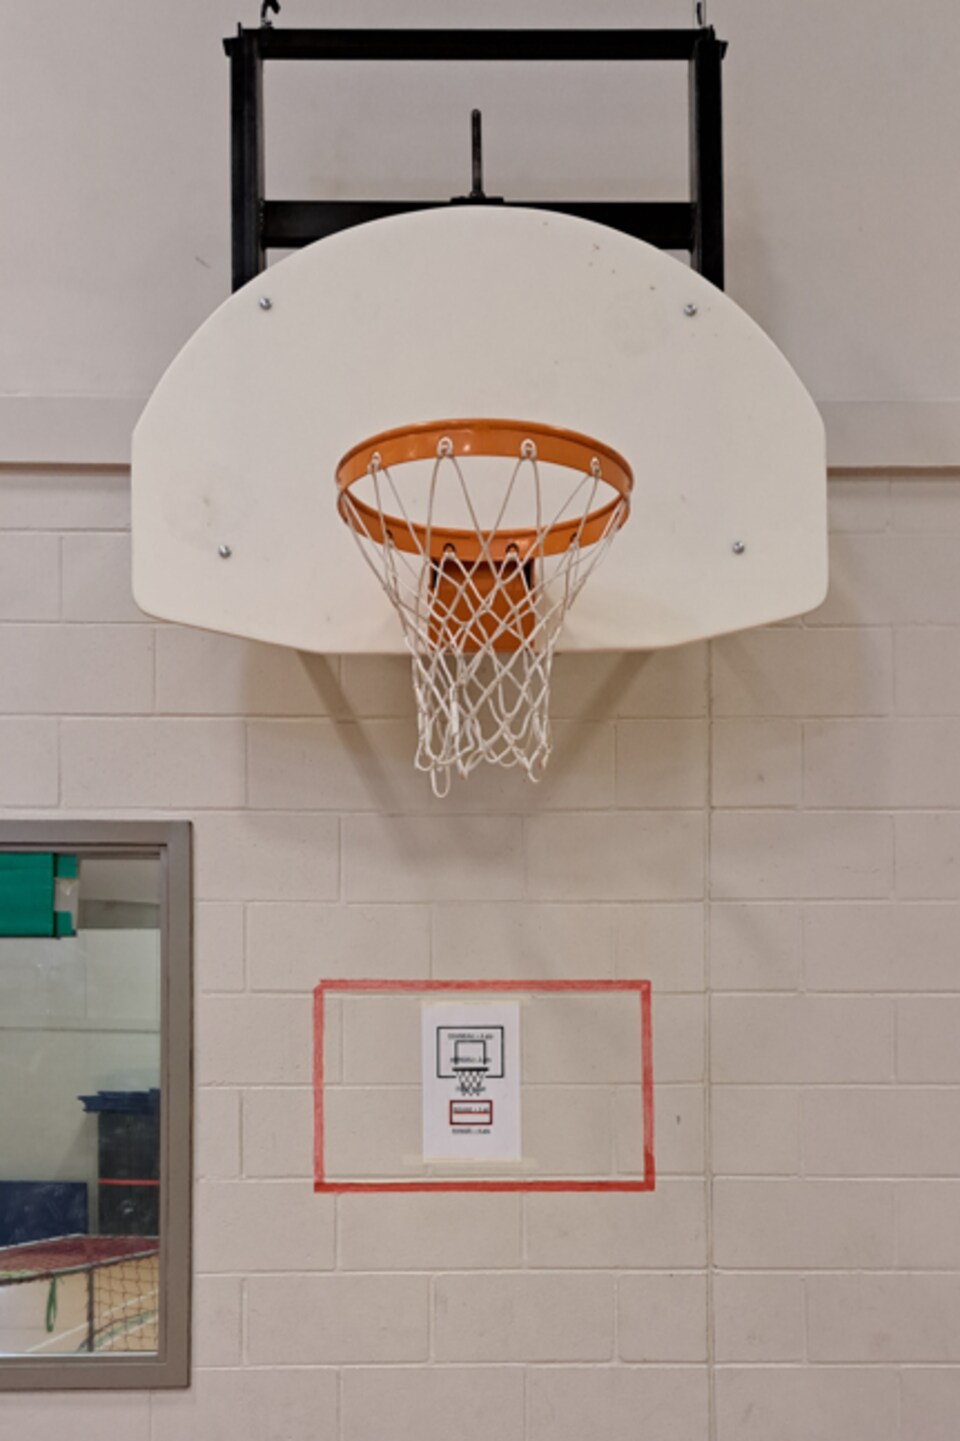 Un panier de basketball dans un gymnase au-dessous duquel on voit un rectangle rouge avec une affiche d'un autre panier